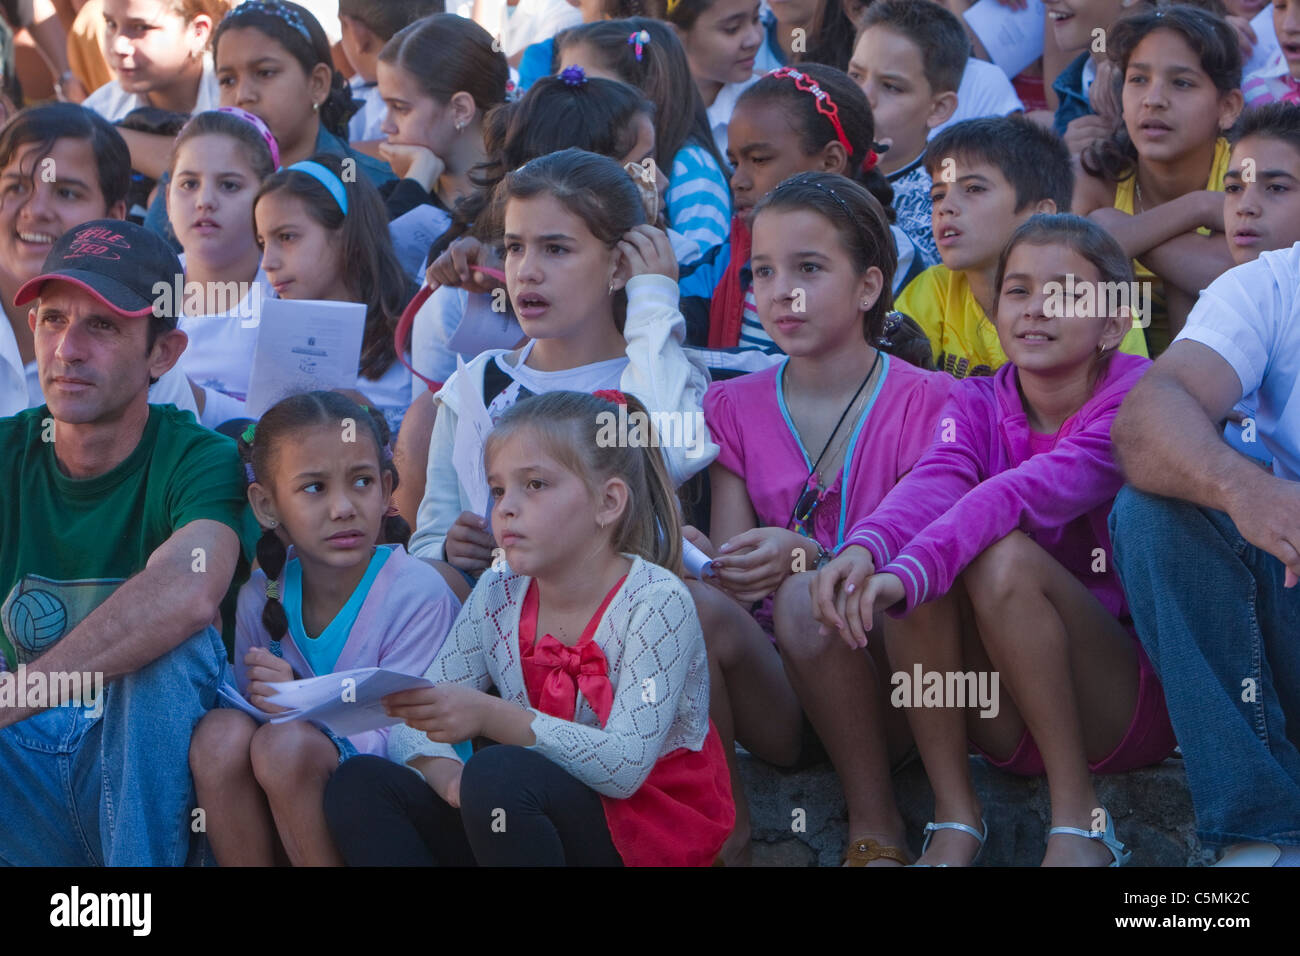 Kuba, Trinidad. Kinder beobachten Carrusel, eine musikalische Darbietung. Stockfoto